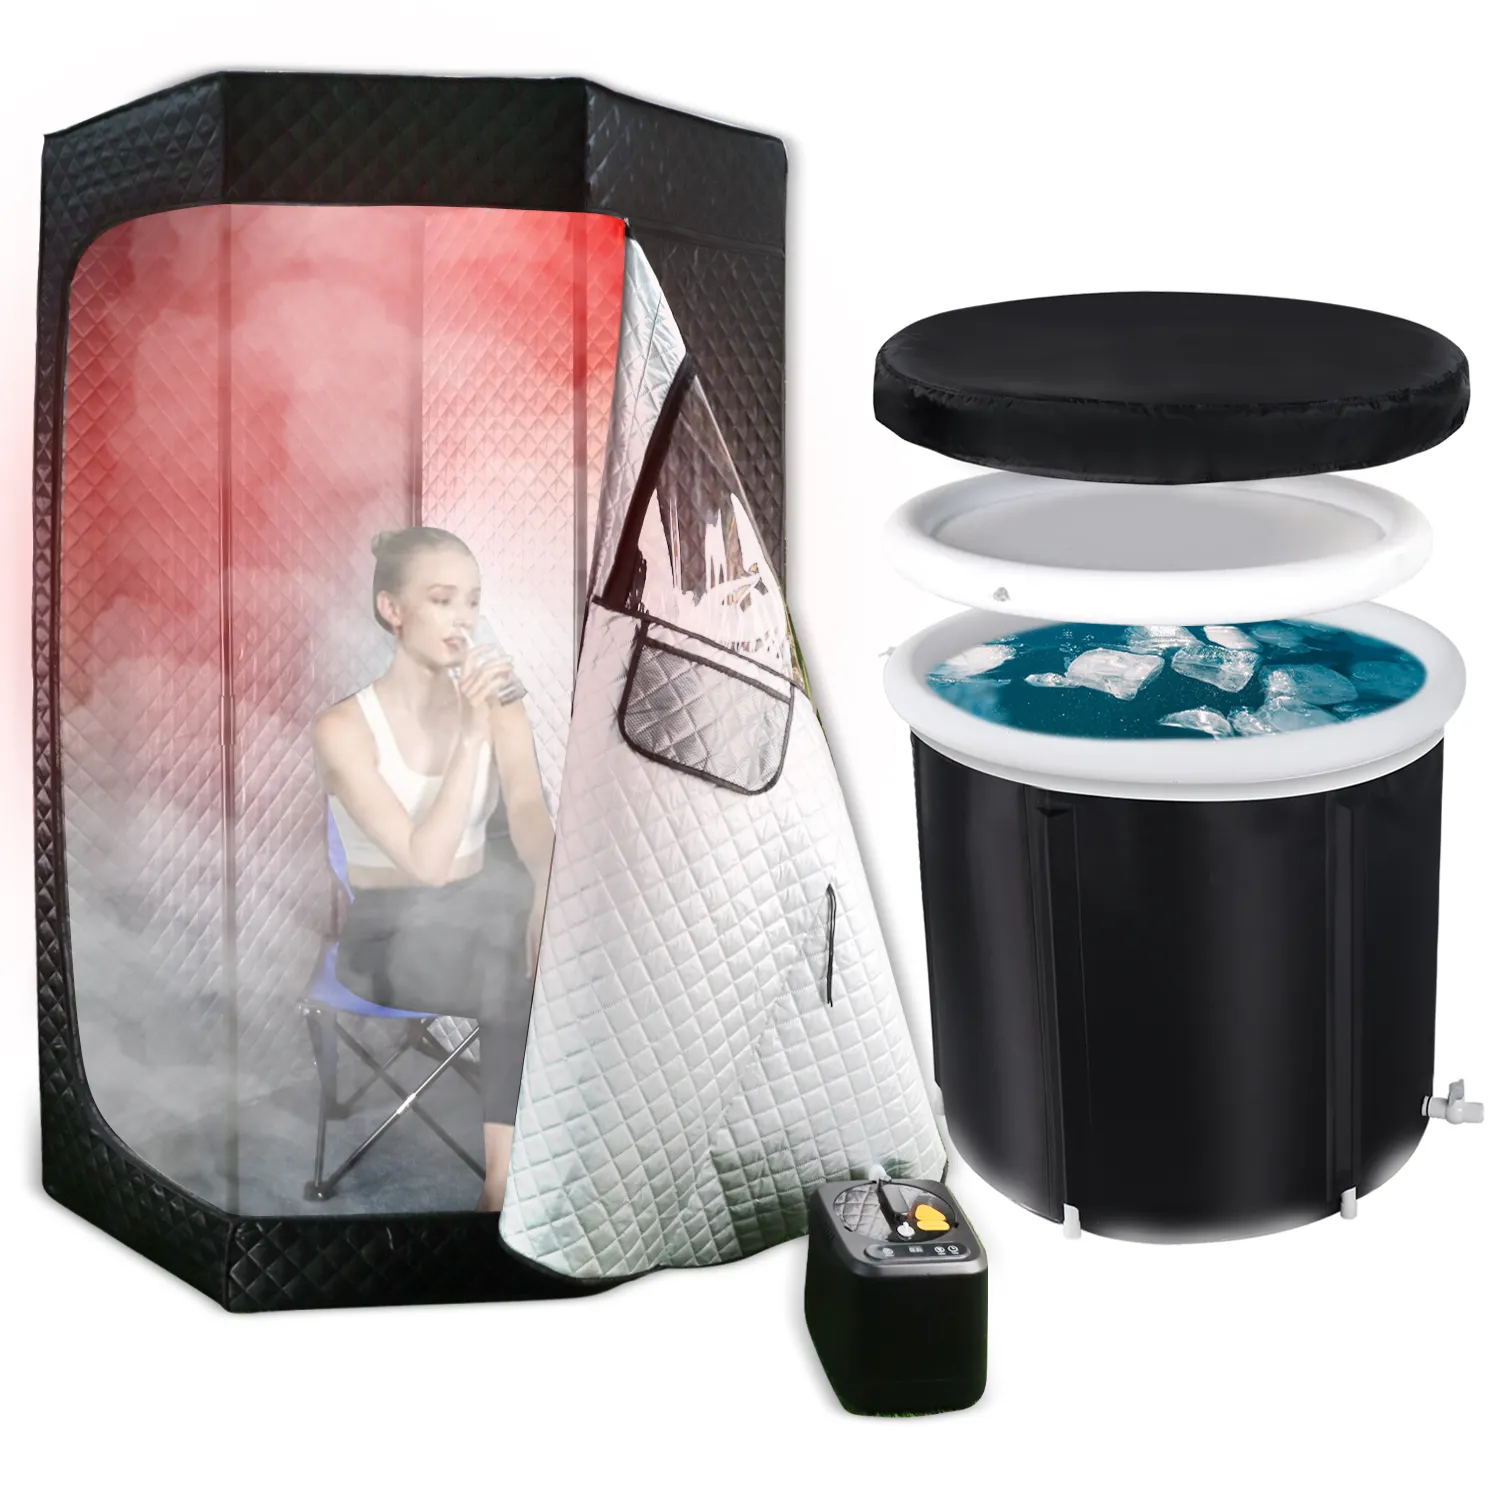 Carpa de sauna infrarroja de vapor portátil OHO, baño de vapor de sudor húmedo y bañera de hidromasaje fría para desintoxicación y recuperación